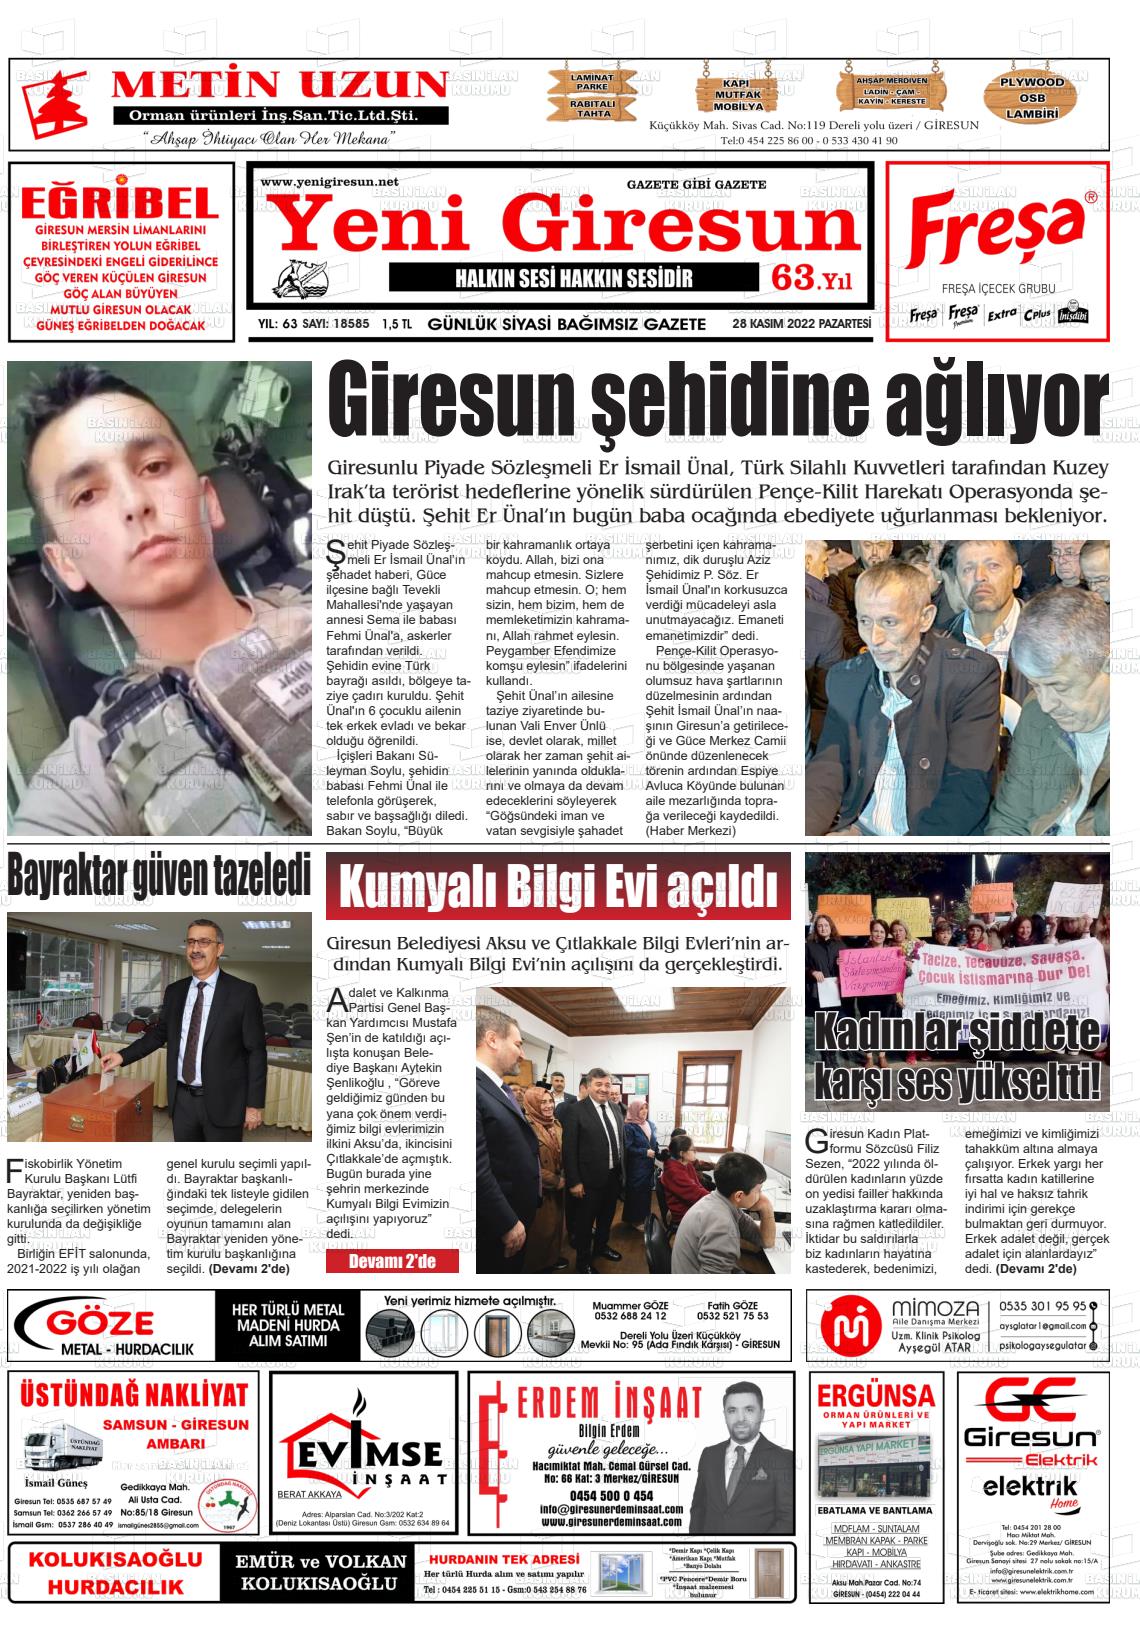 28 Kasım 2022 Yeni Giresun Gazete Manşeti